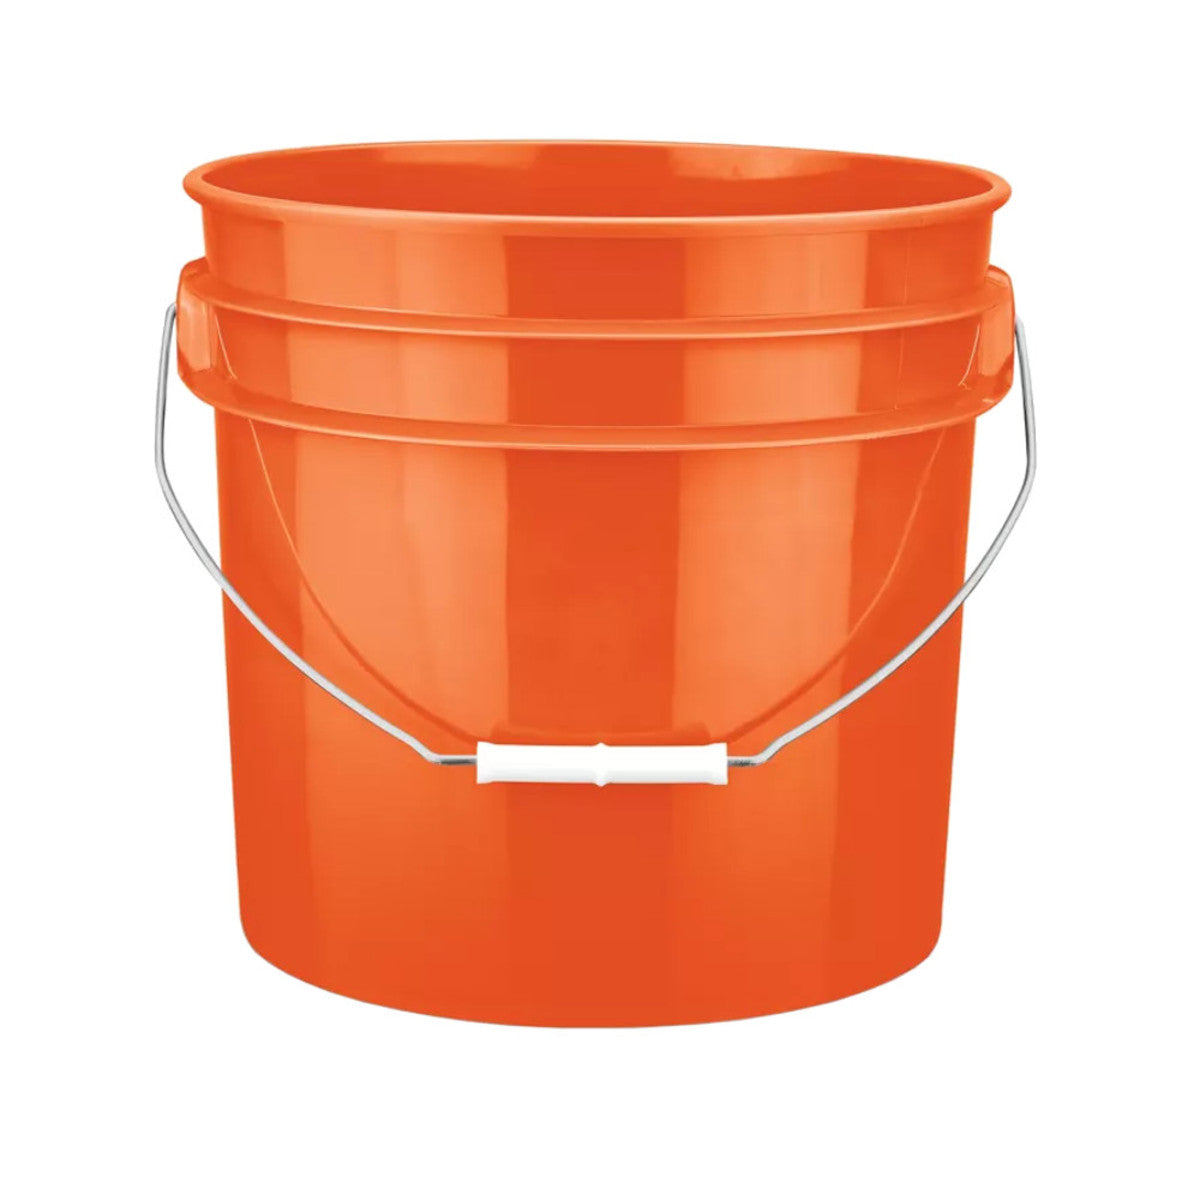 3 1/2 Gallon Round Bucket